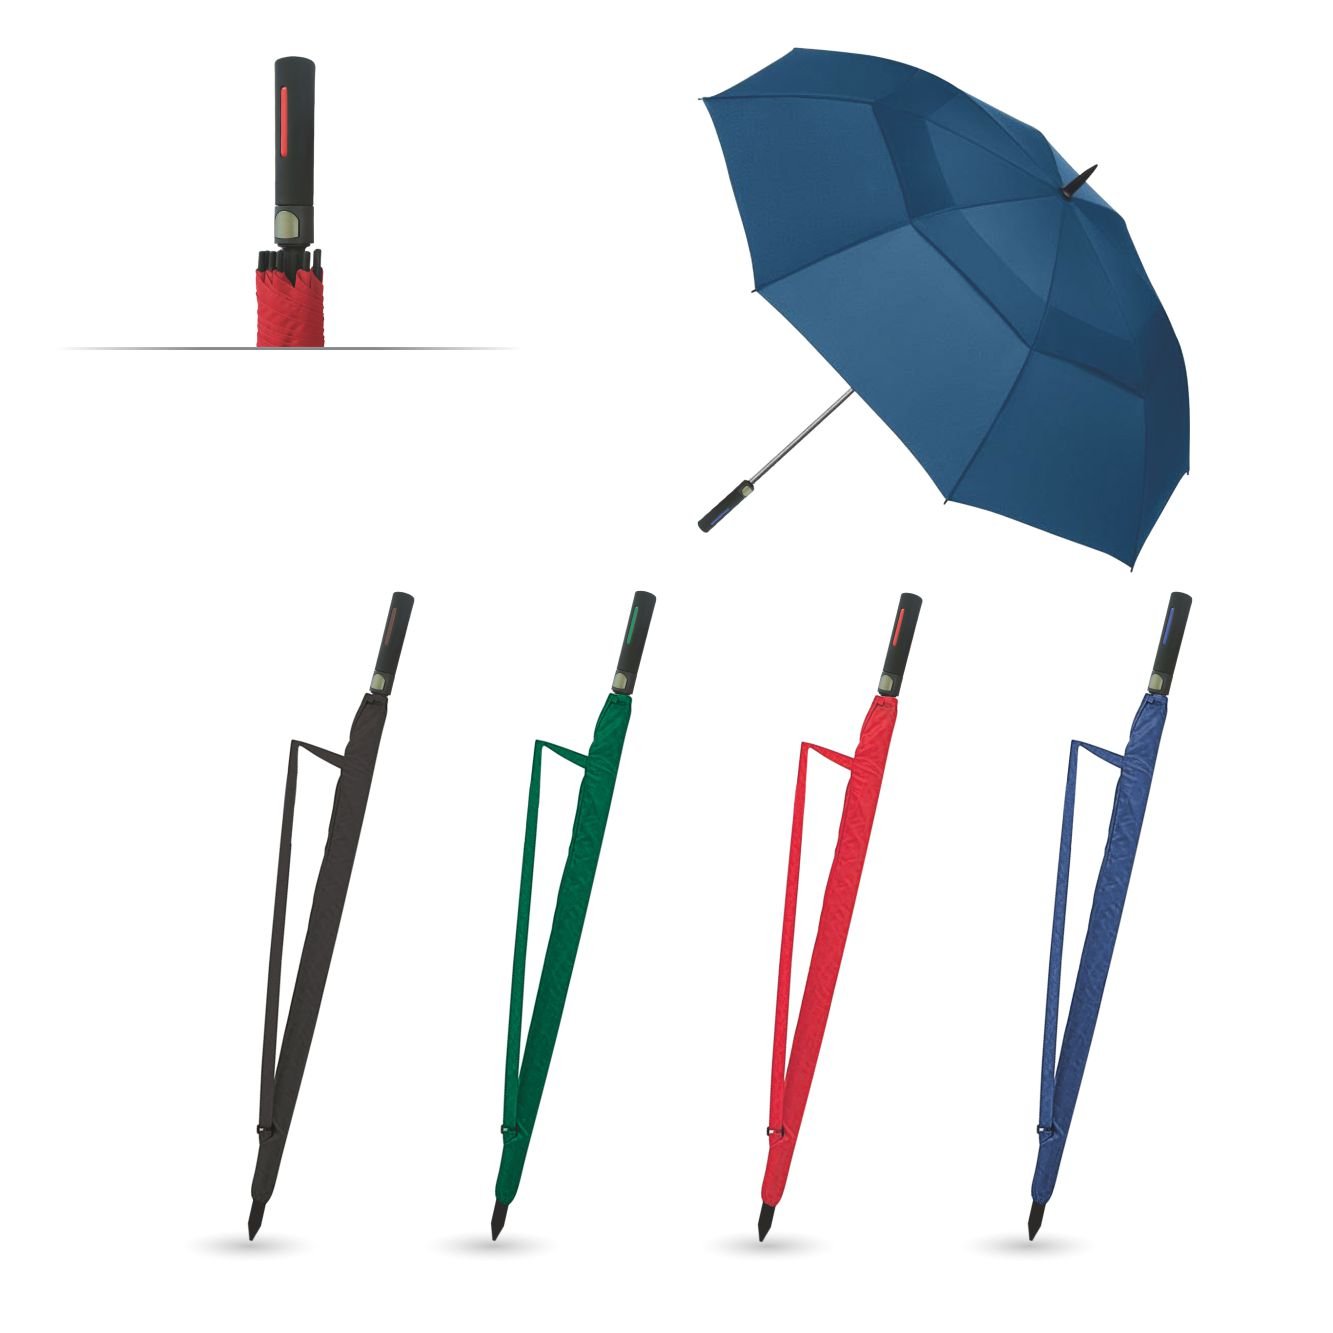 4_0910-hombro-ombrello-maxi-golf.jpg